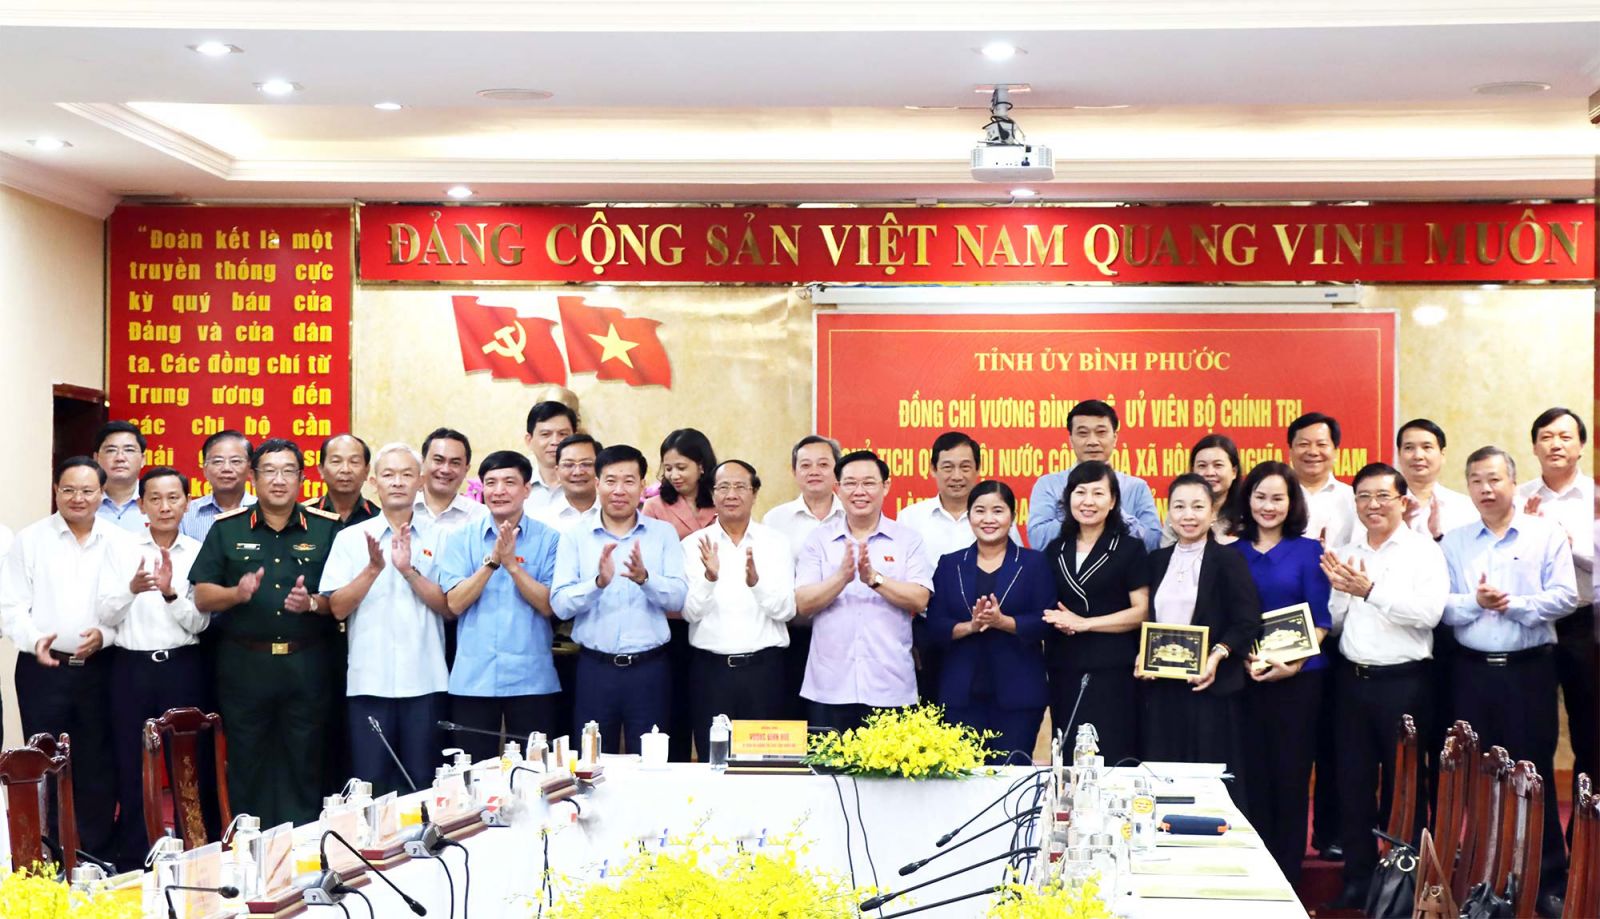 Chủ tịch Quốc hội Vương Đình Huệ và Phó thủ tướng Chính phủ Lê Văn Thành cùng lãnh đạo các bộ, ngành Trung ương chụp hình lưu niệm với Ban Thường vụ Tỉnh ủy và lãnh đạo tỉnh Bình Phước.